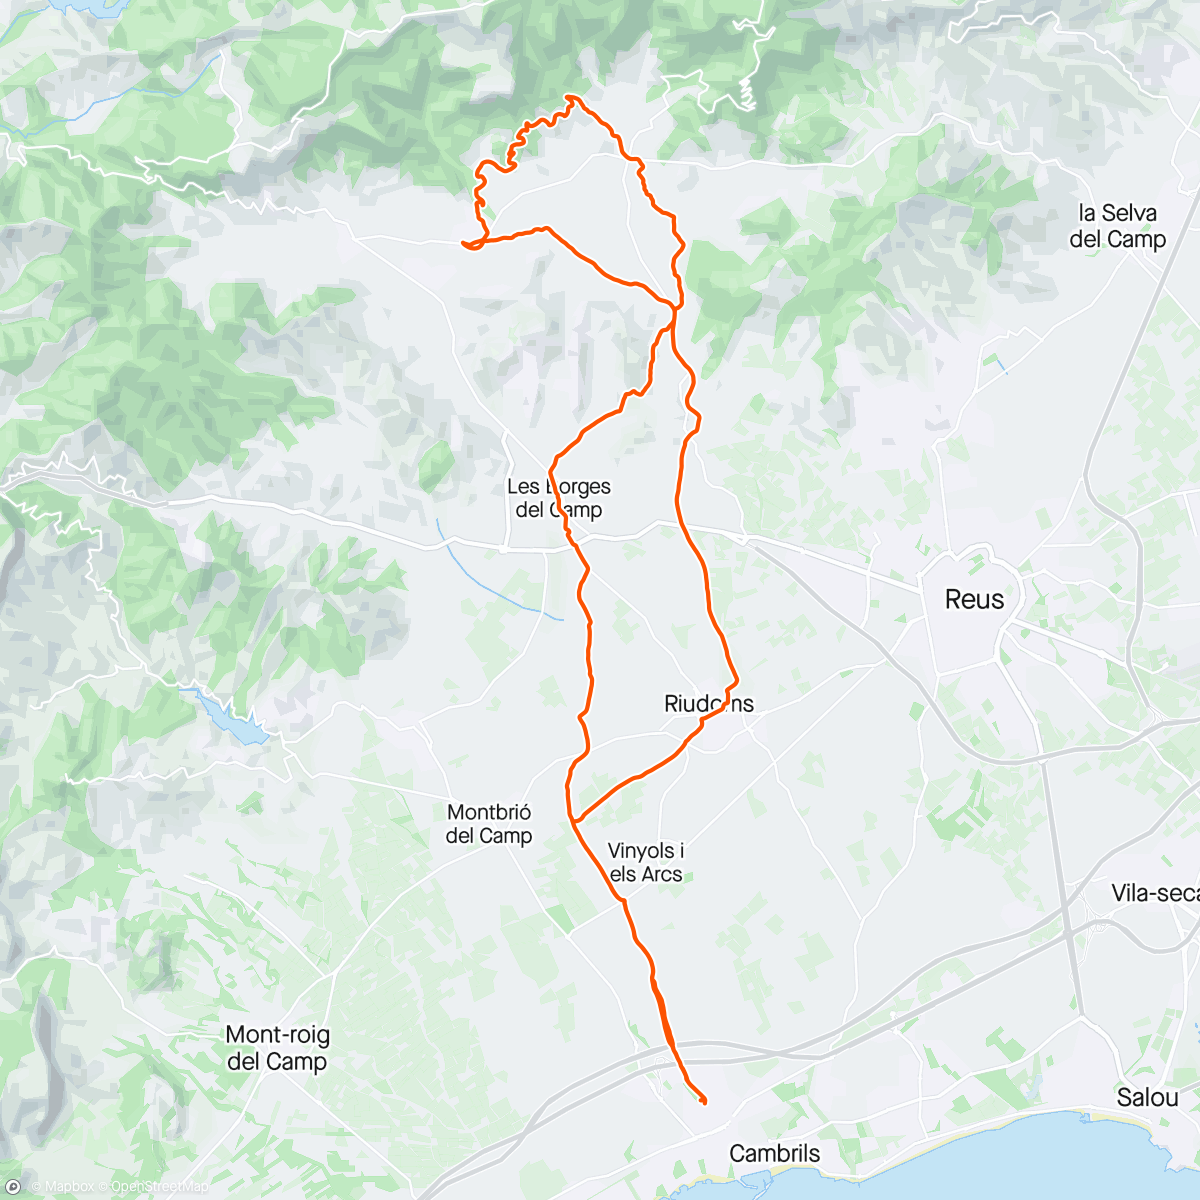 Mapa da atividade, Vilaplana, Garrigots, Portugal